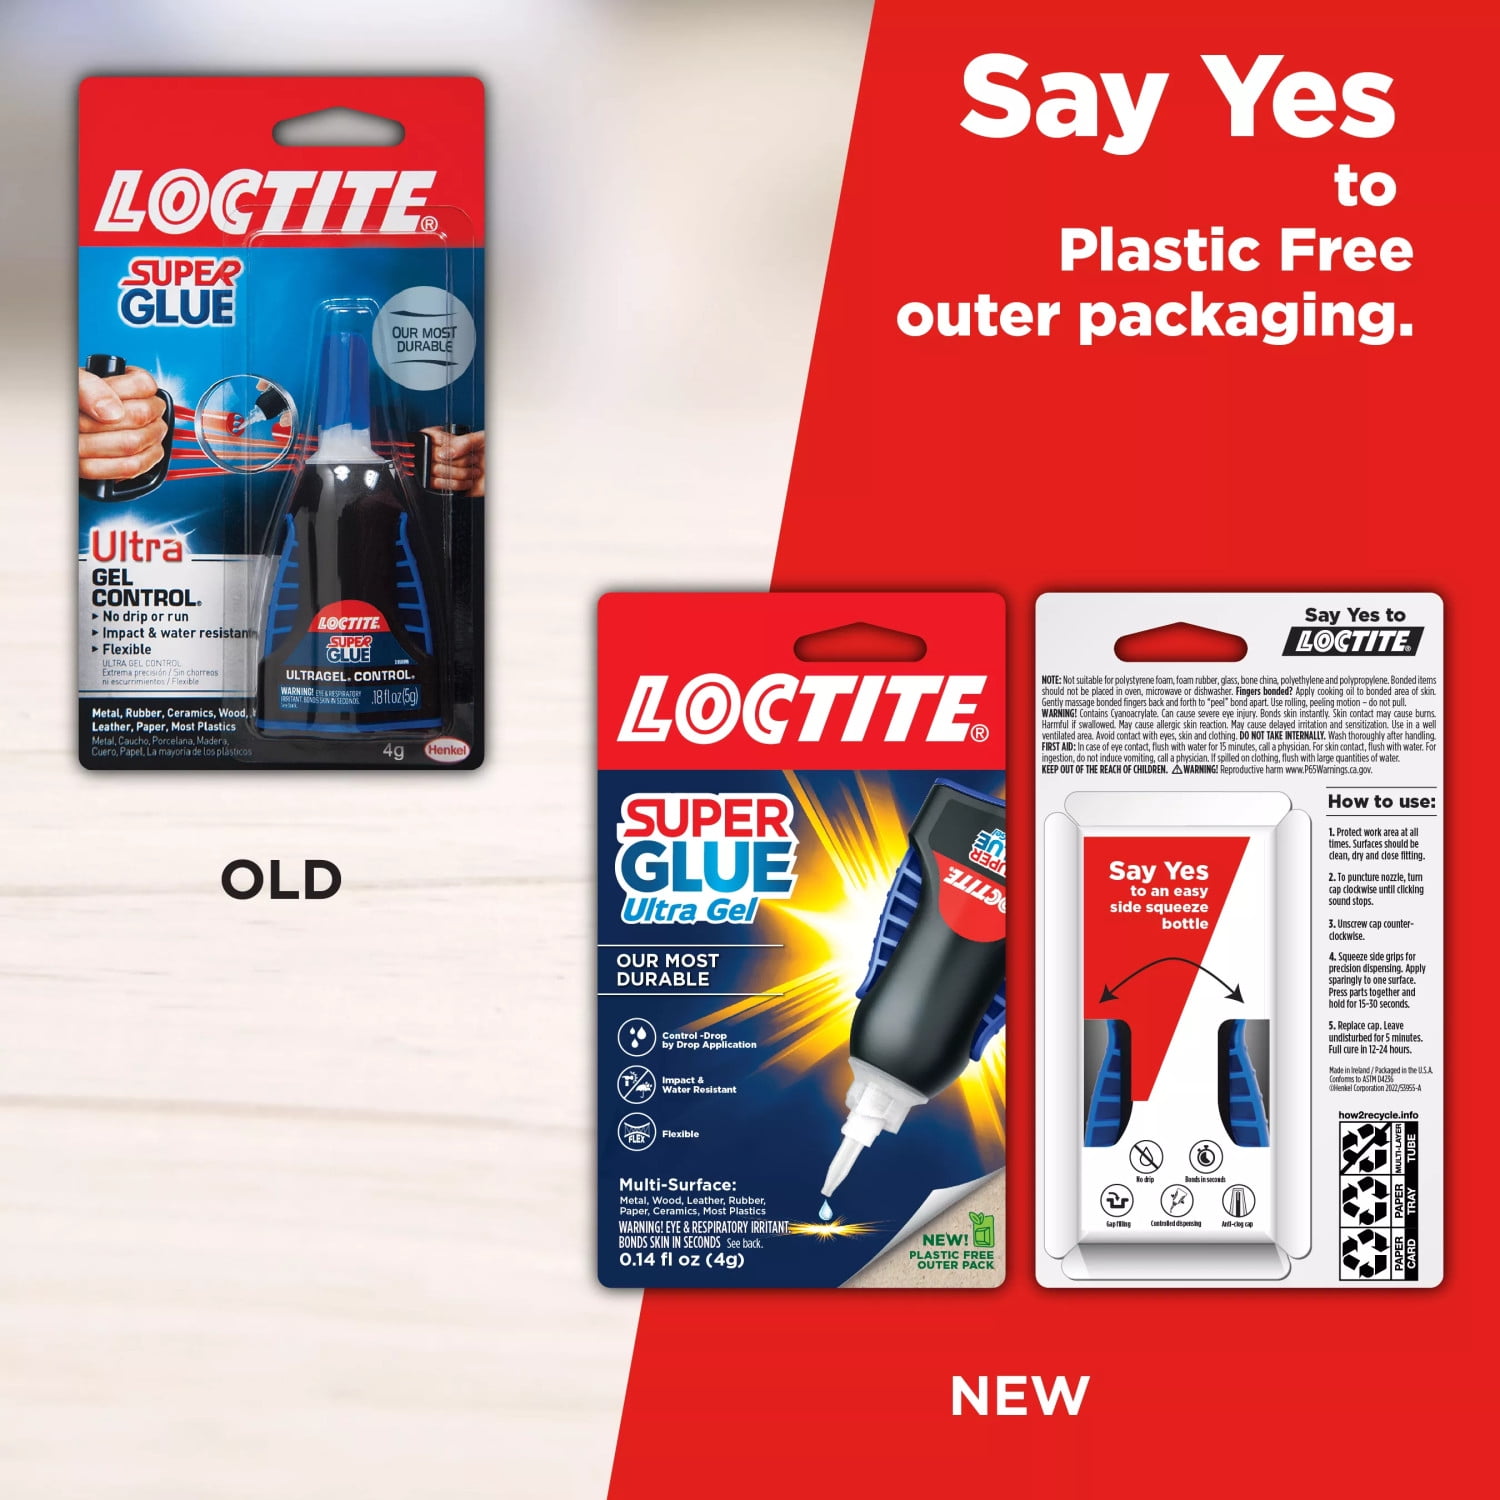 Loctite Super Glue - Ultra Liquid Control - Shop Adhesives & Tape